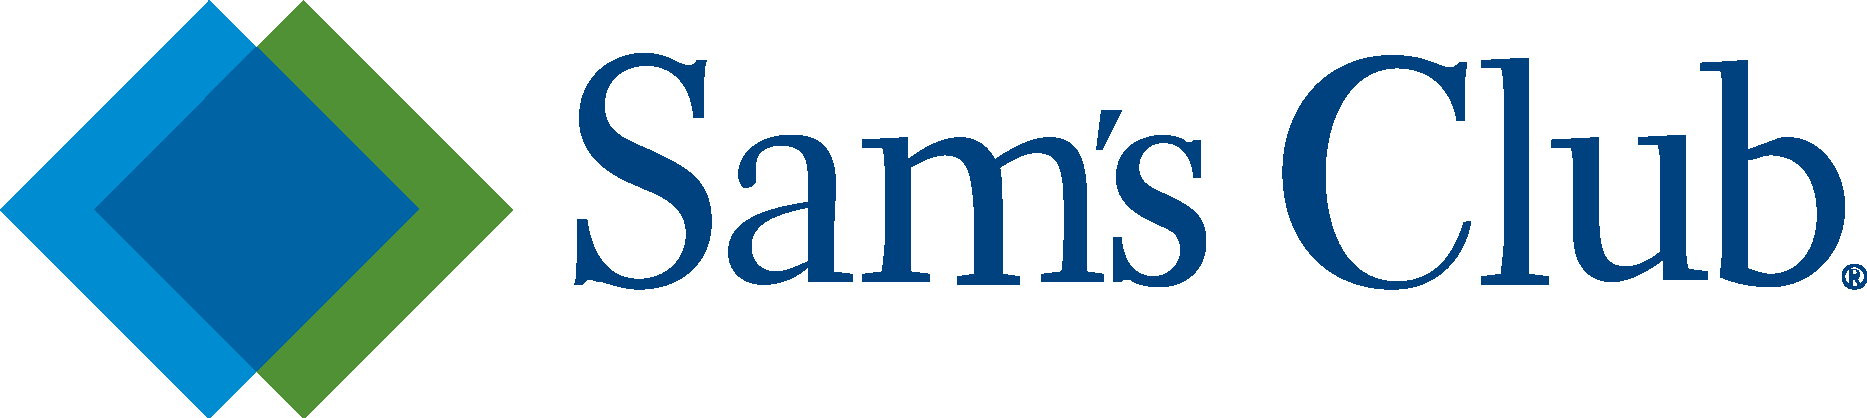 Sam’s Club simple Logo Vector